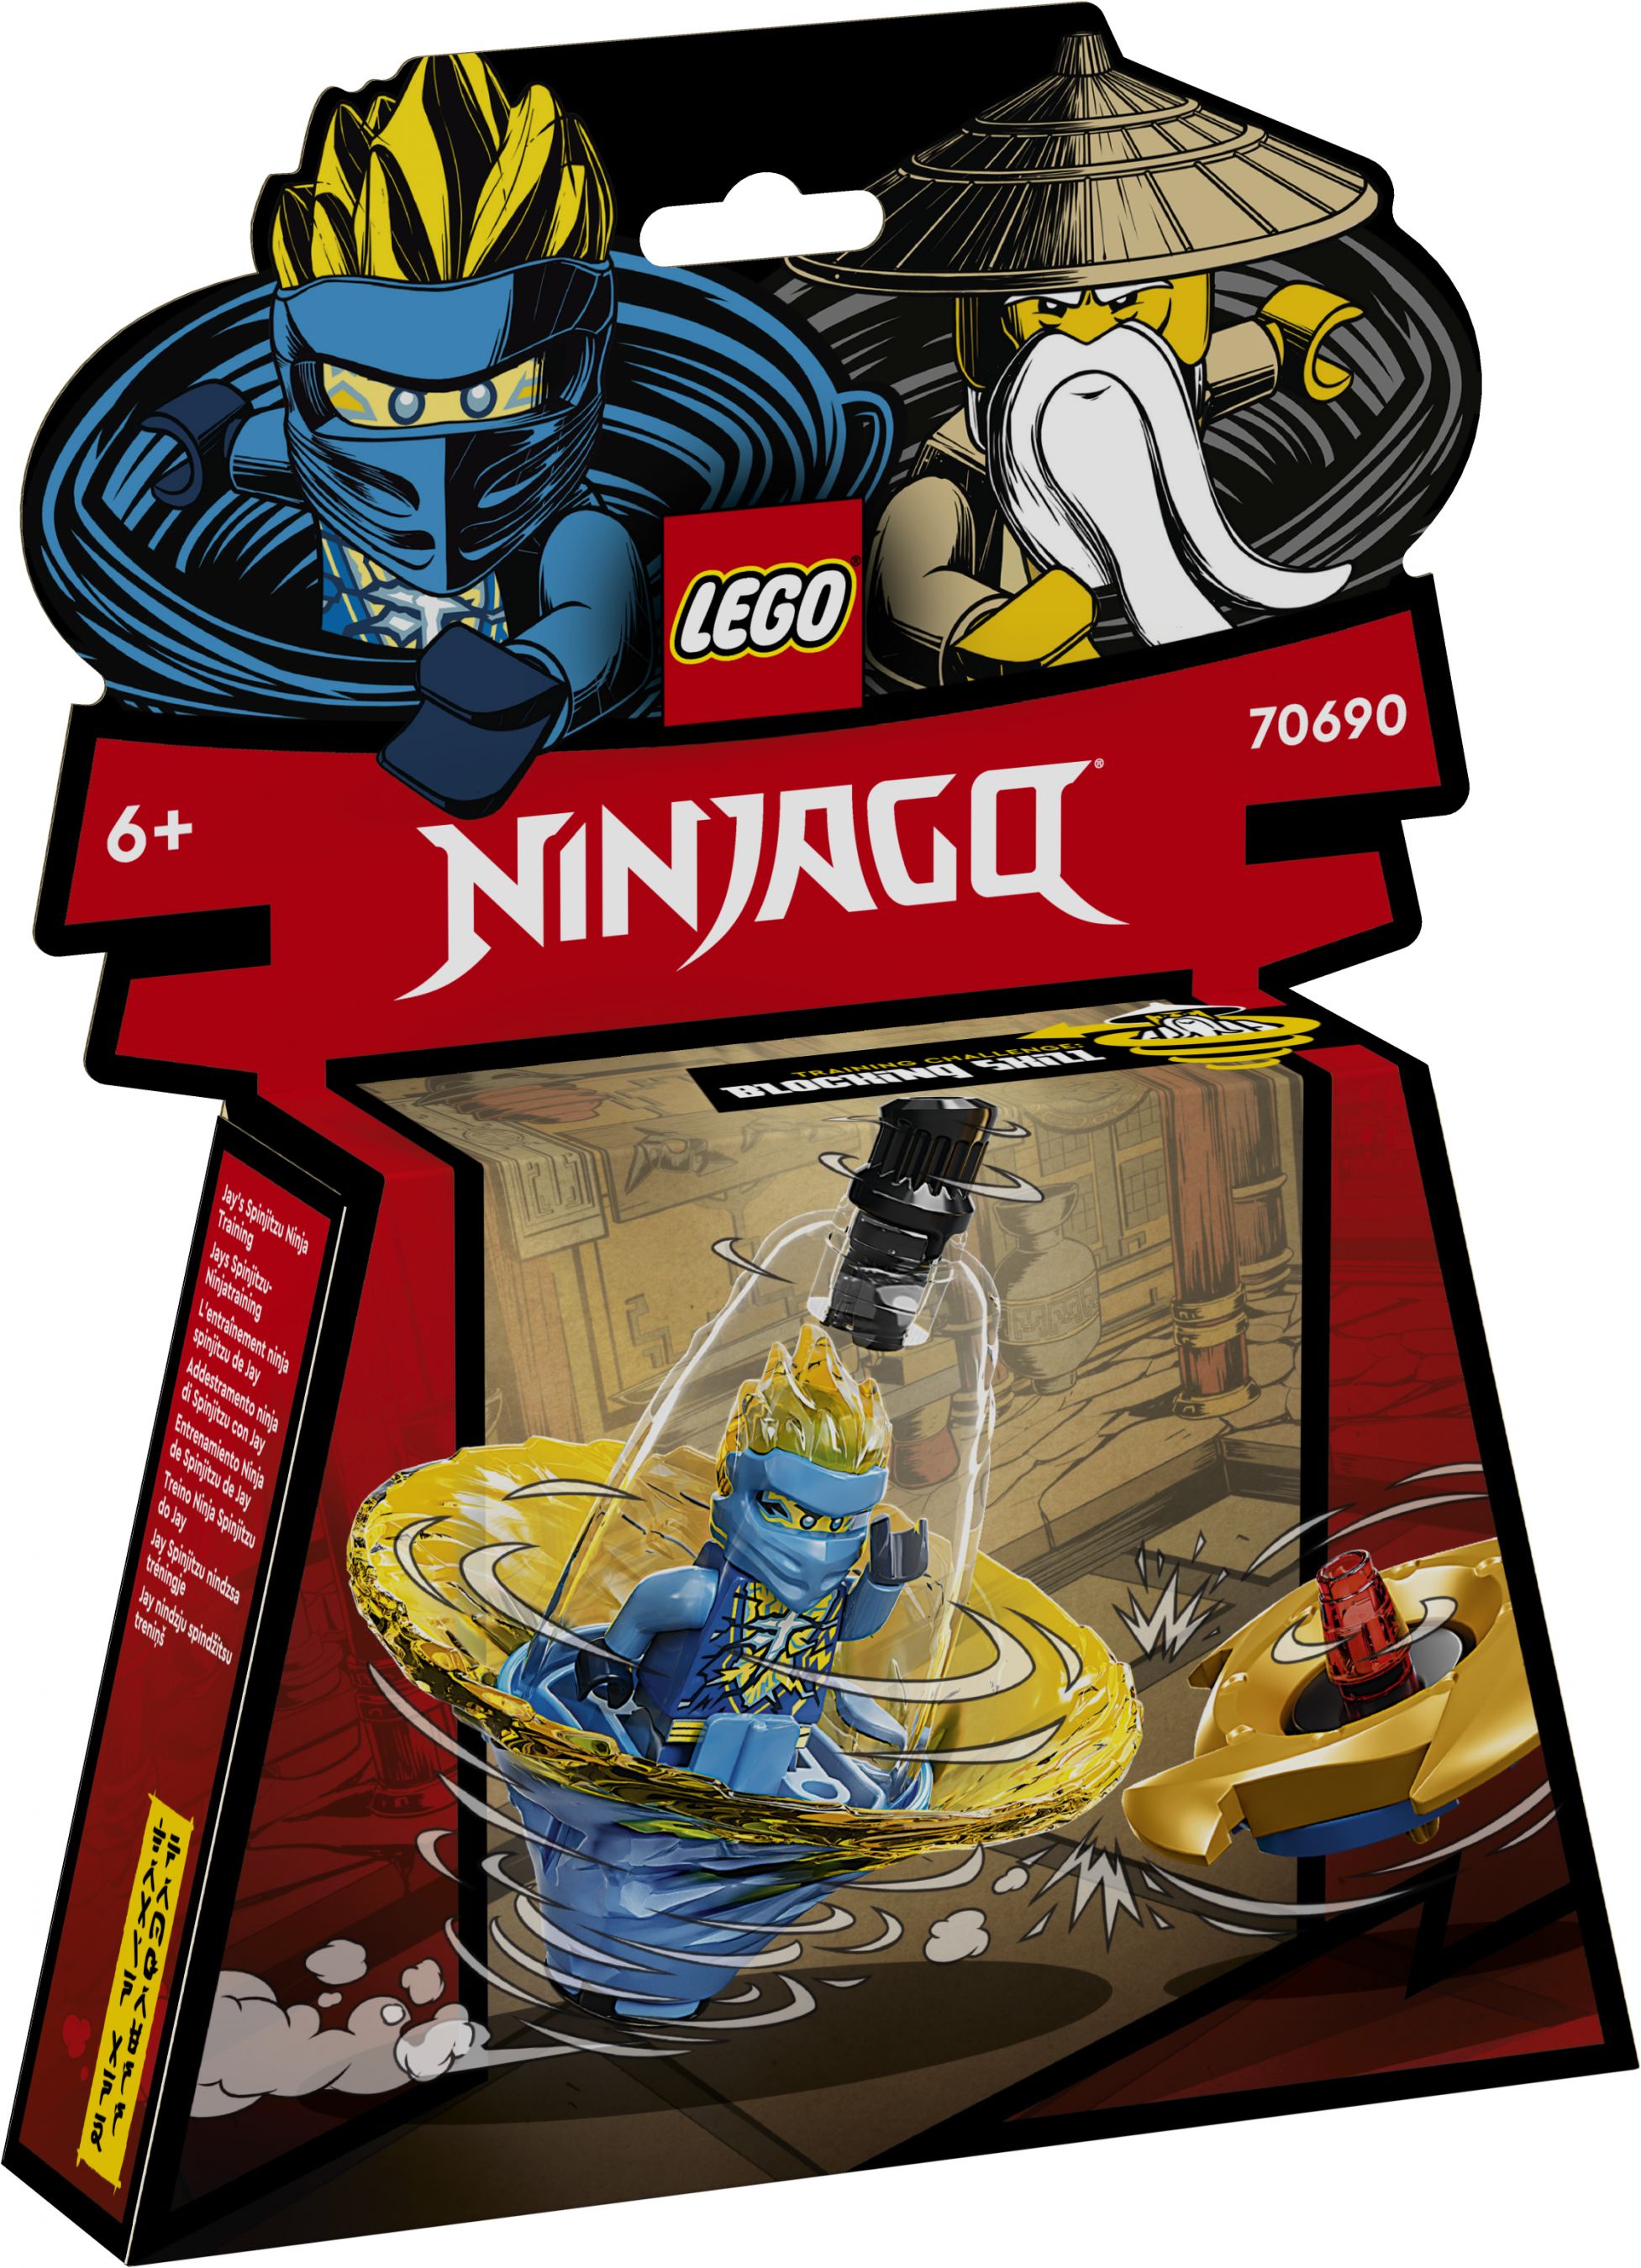 LEGO Ninjago 70690 Jays Spinjitzu-Ninjatraining LEGO_70690_Box1_V29.jpg